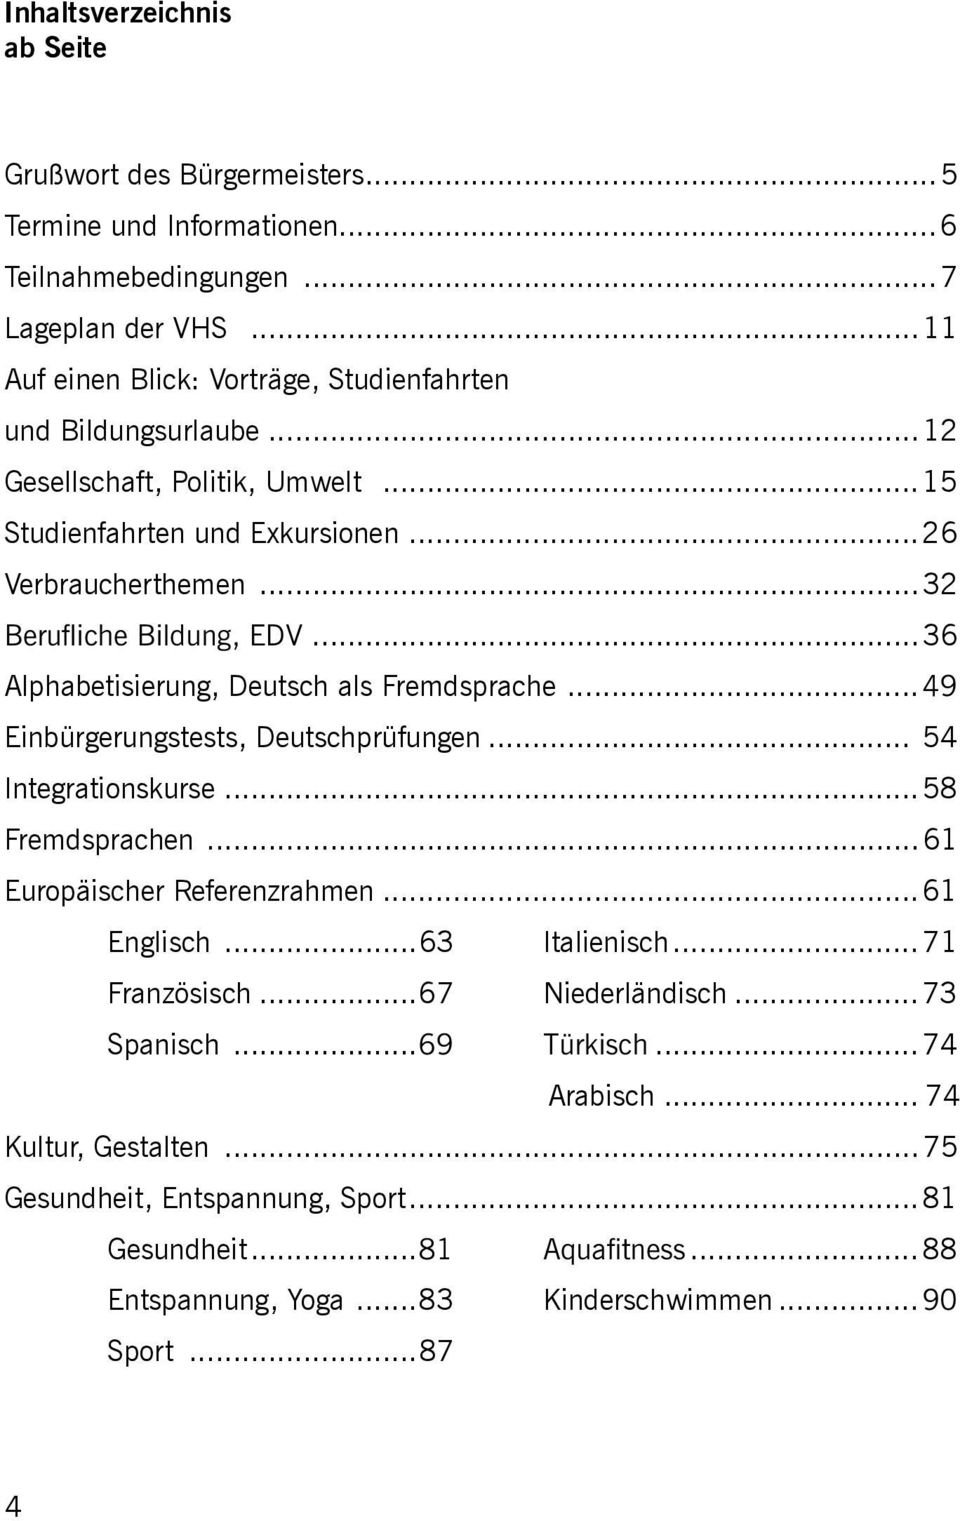 ..36 Alphabetisierung, Deutsch als Fremdsprache... Einbürgerungstests, Deutschprüfungen... 54 Integrationskurse...58 Fremdsprachen...61 Europäischer Referenzrahmen.